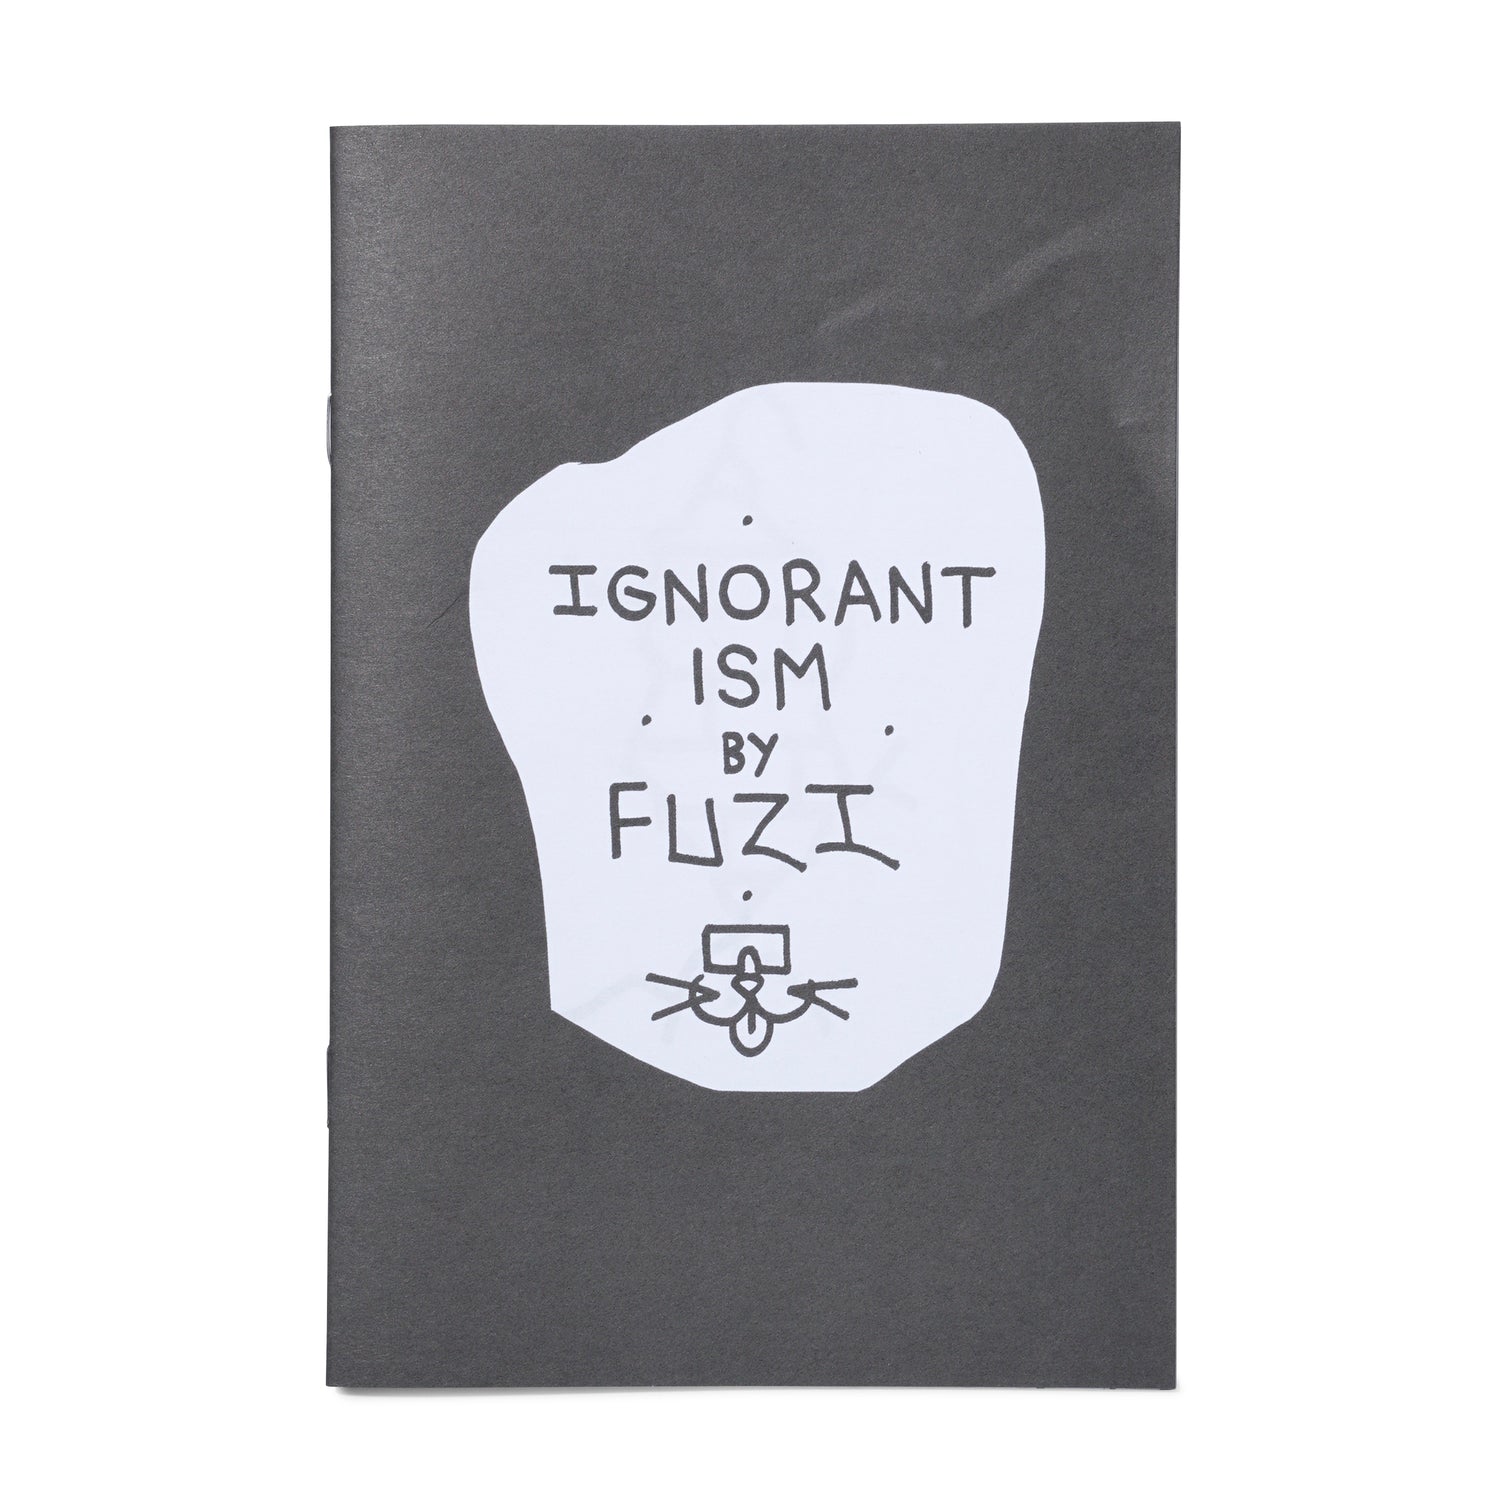 FUZI - 'Ignorantism' Zine